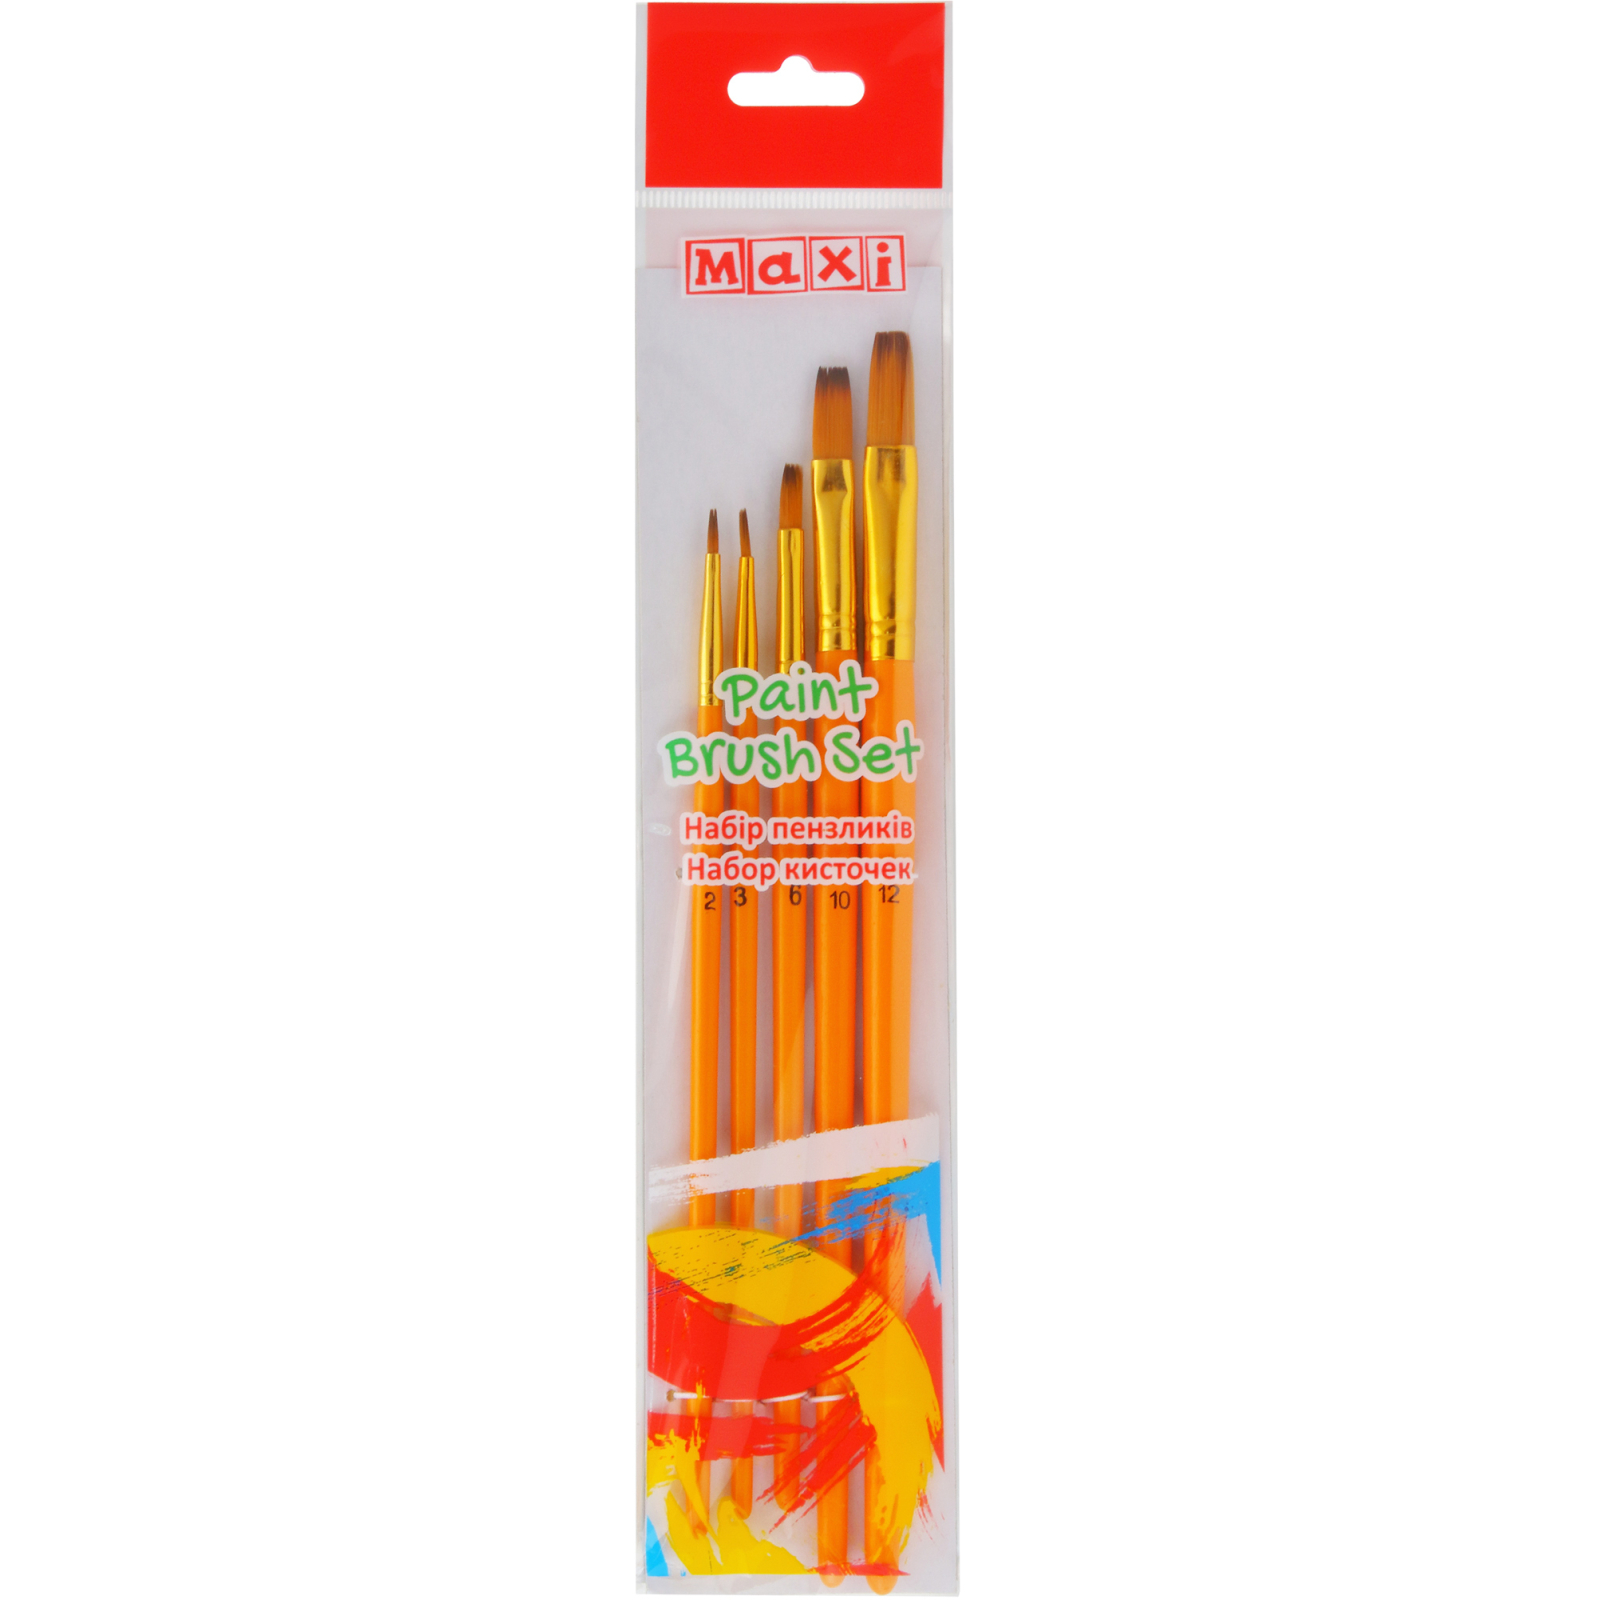 Кисточка для рисования Maxi набор 5 шт синтетический ворс плоский (№ 2, 3, 6, 10, 12) короткая ручка (MX60876)